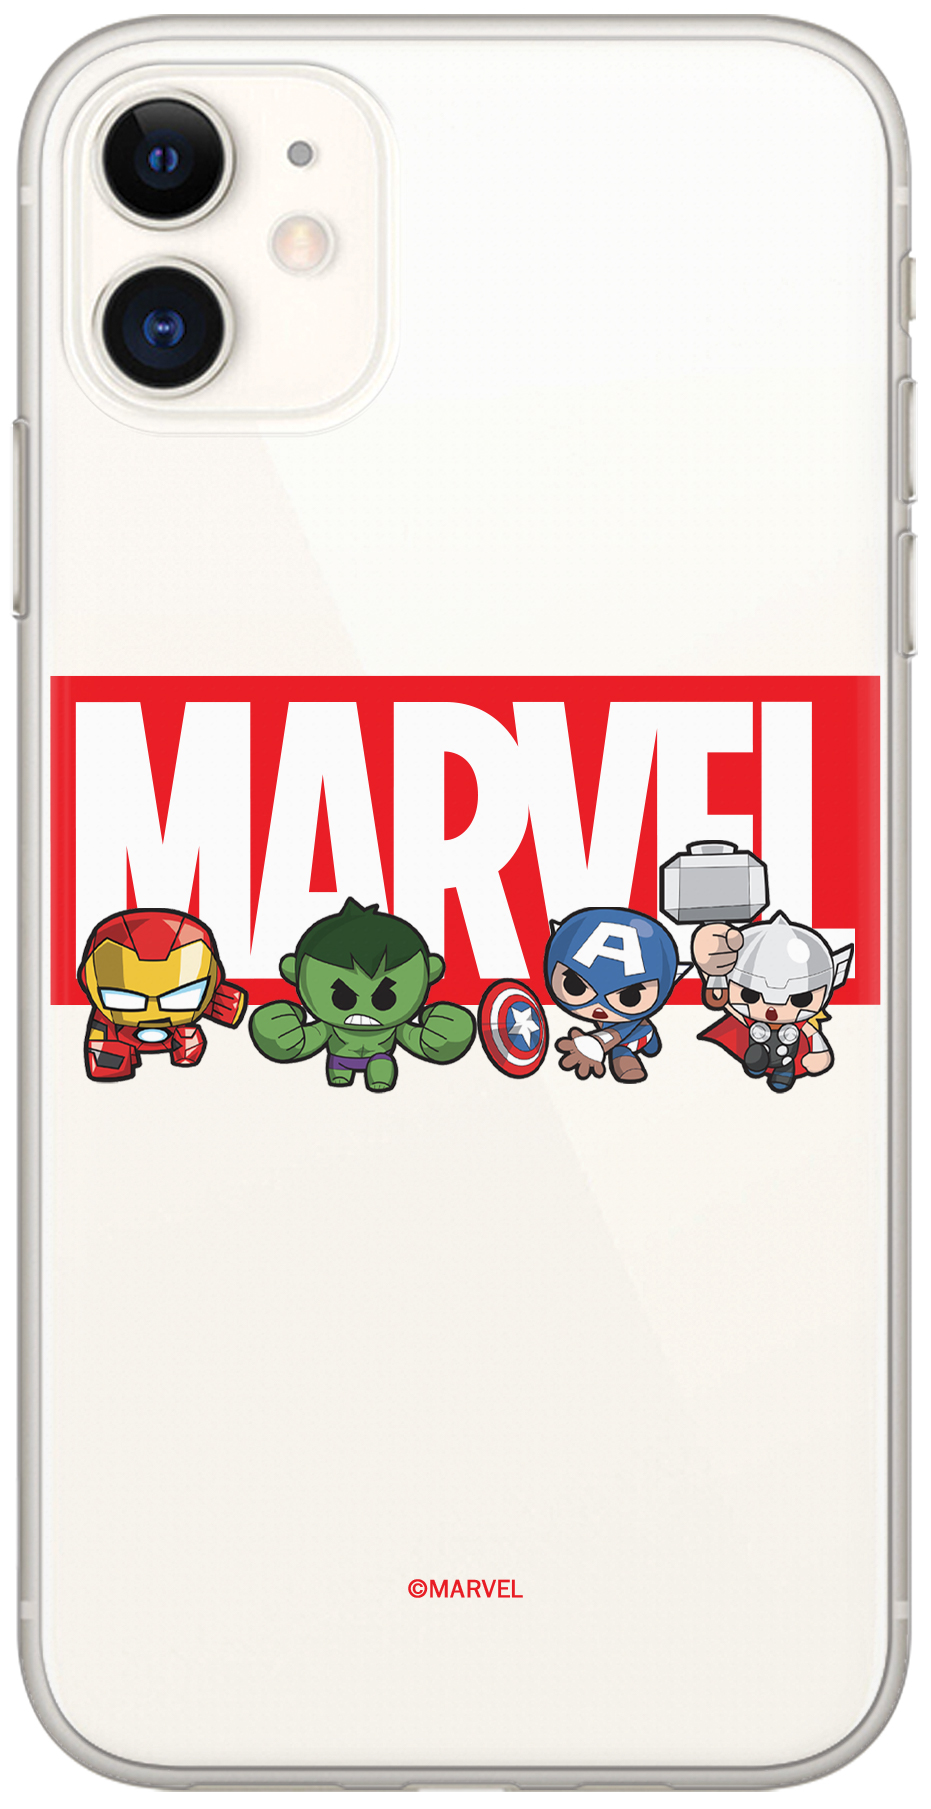 Ochranný kryt pro iPhone 6 / 6S - Marvel, Marvel 009